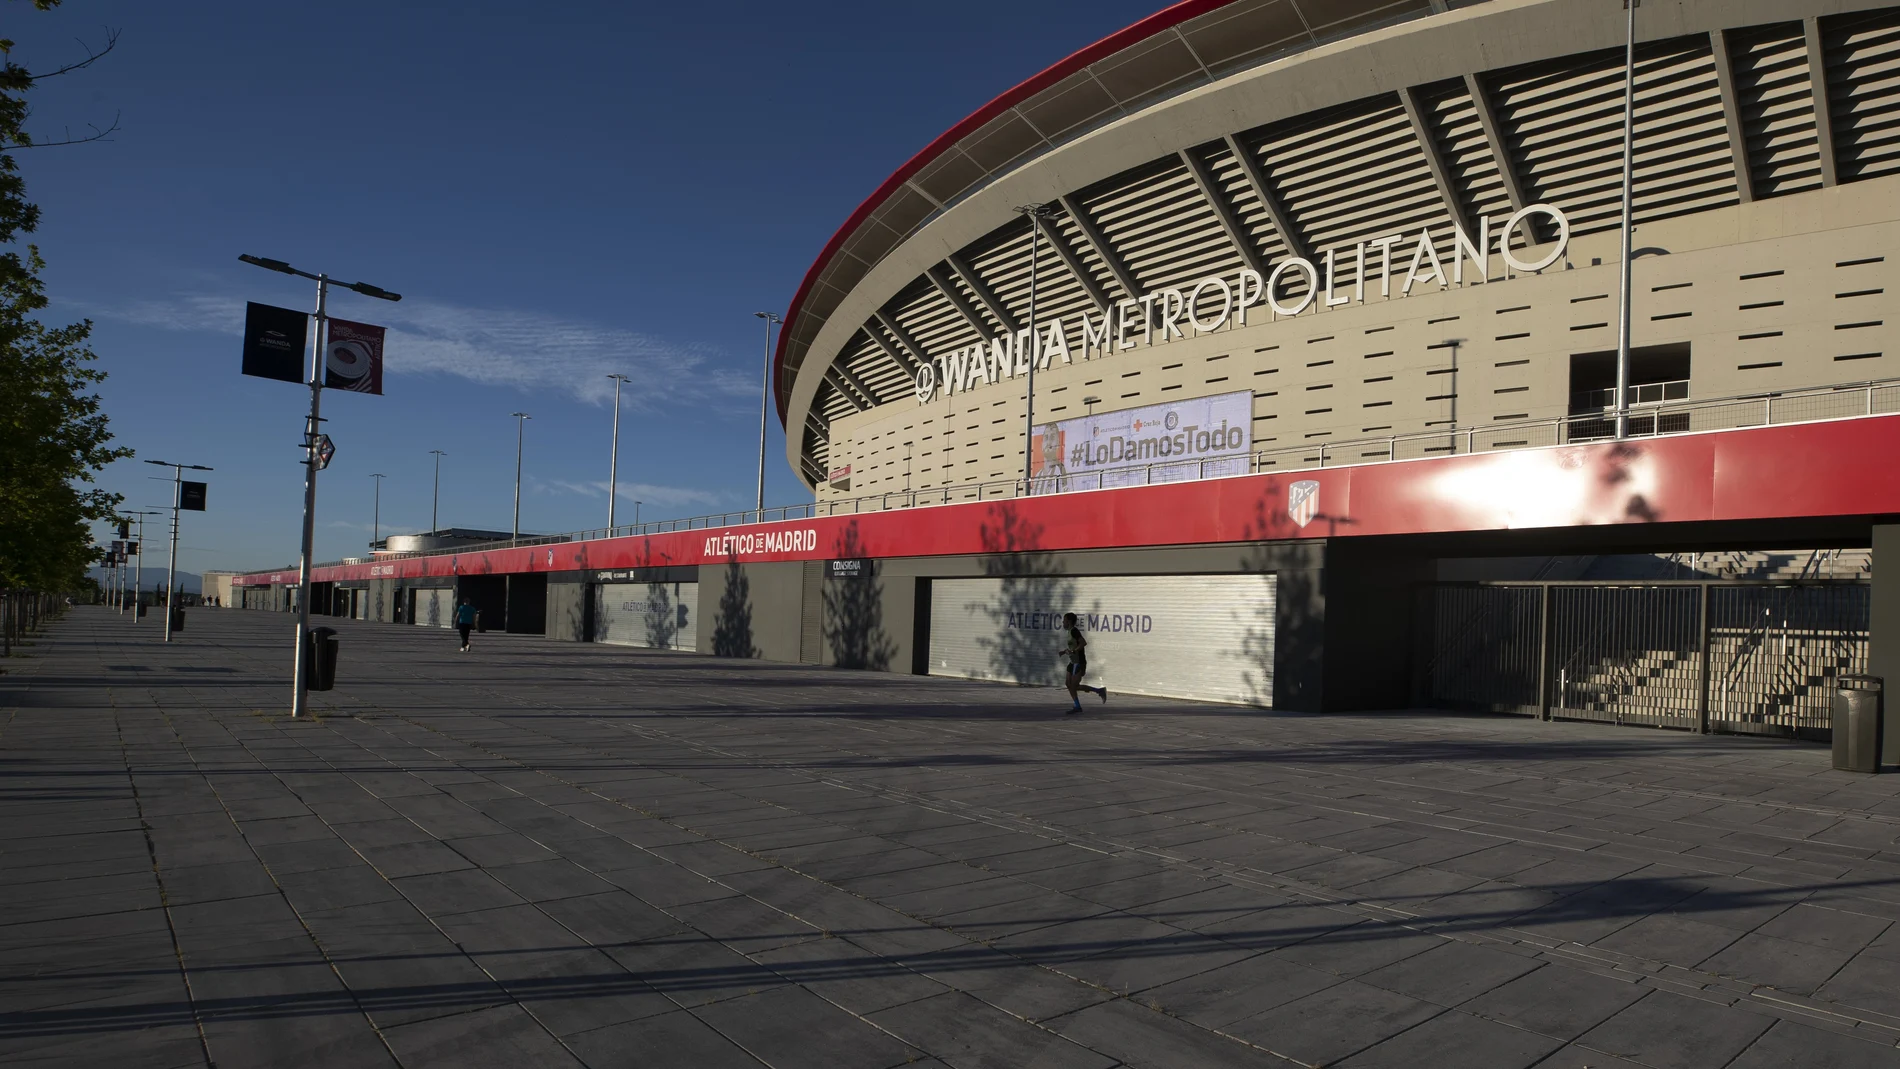 Alrededores del Wanda Metropolitano, el estadio del Atlético de Madrid